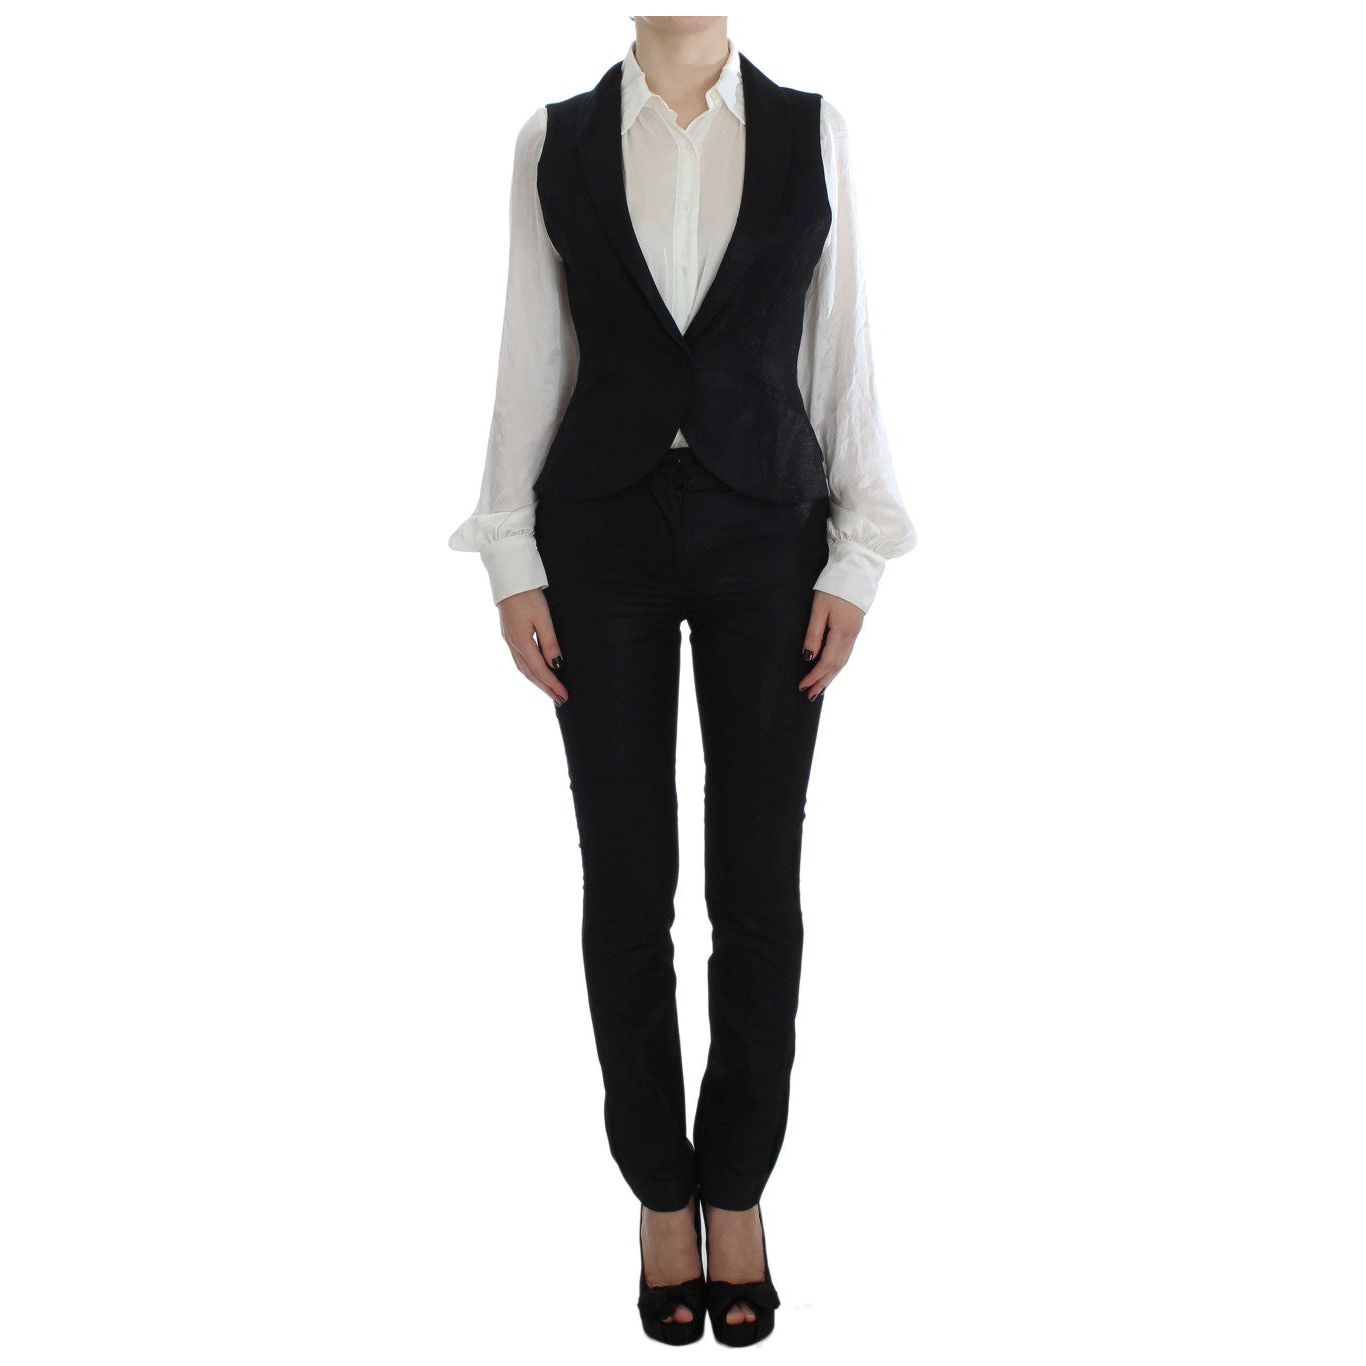 Exte Elegant Three-Piece Black Pants Suit black-one-button-three-piece-suit